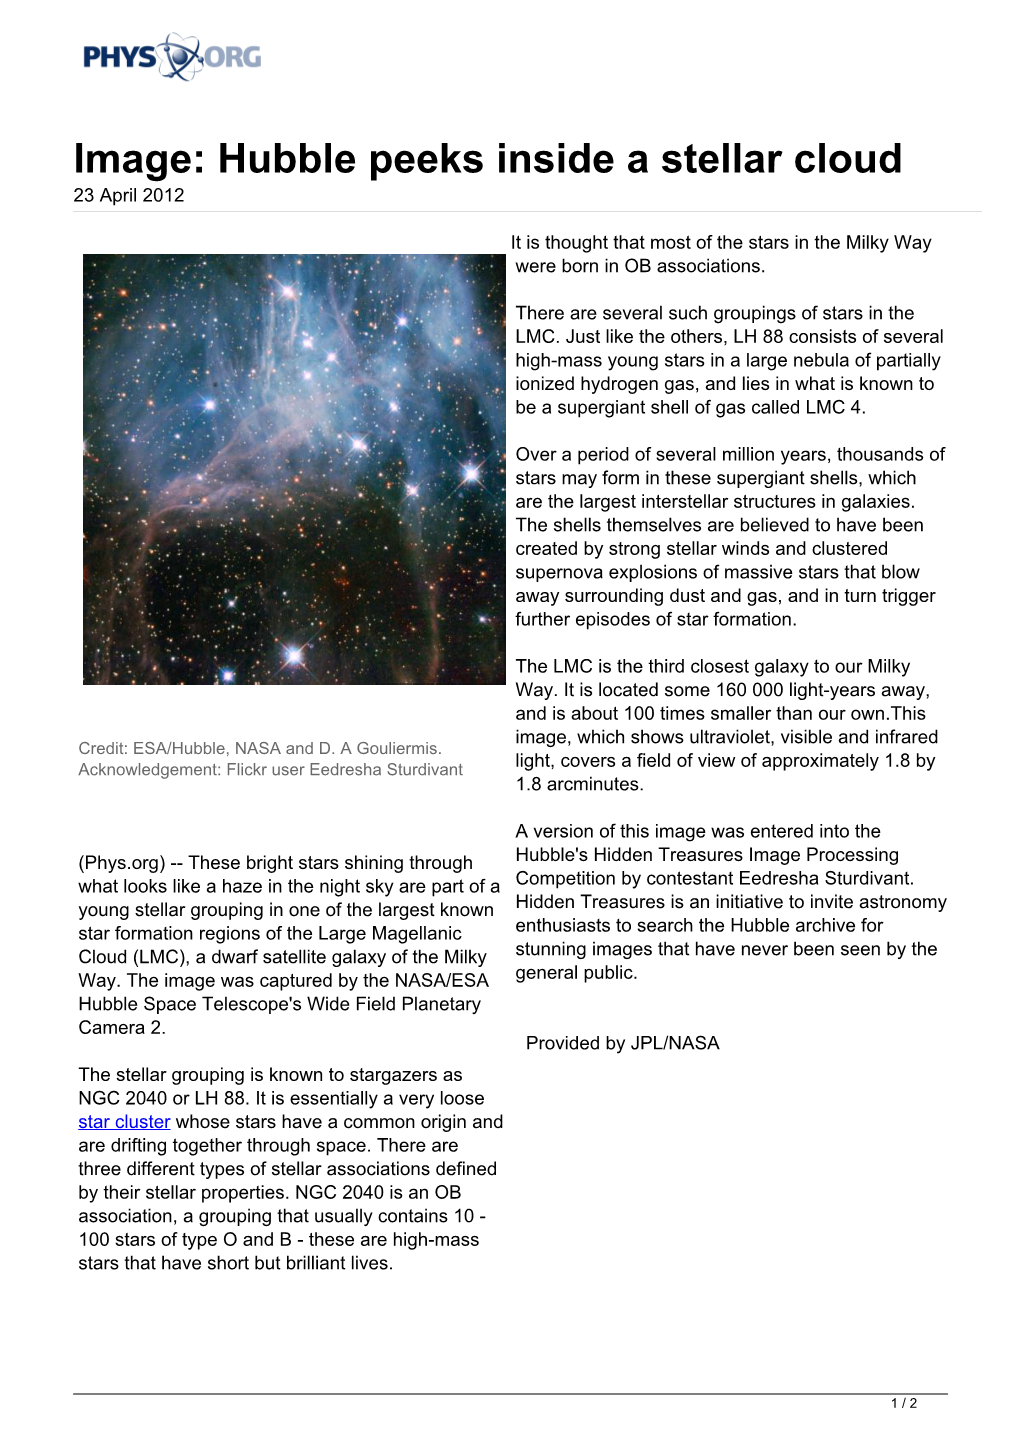 Hubble Peeks Inside a Stellar Cloud 23 April 2012